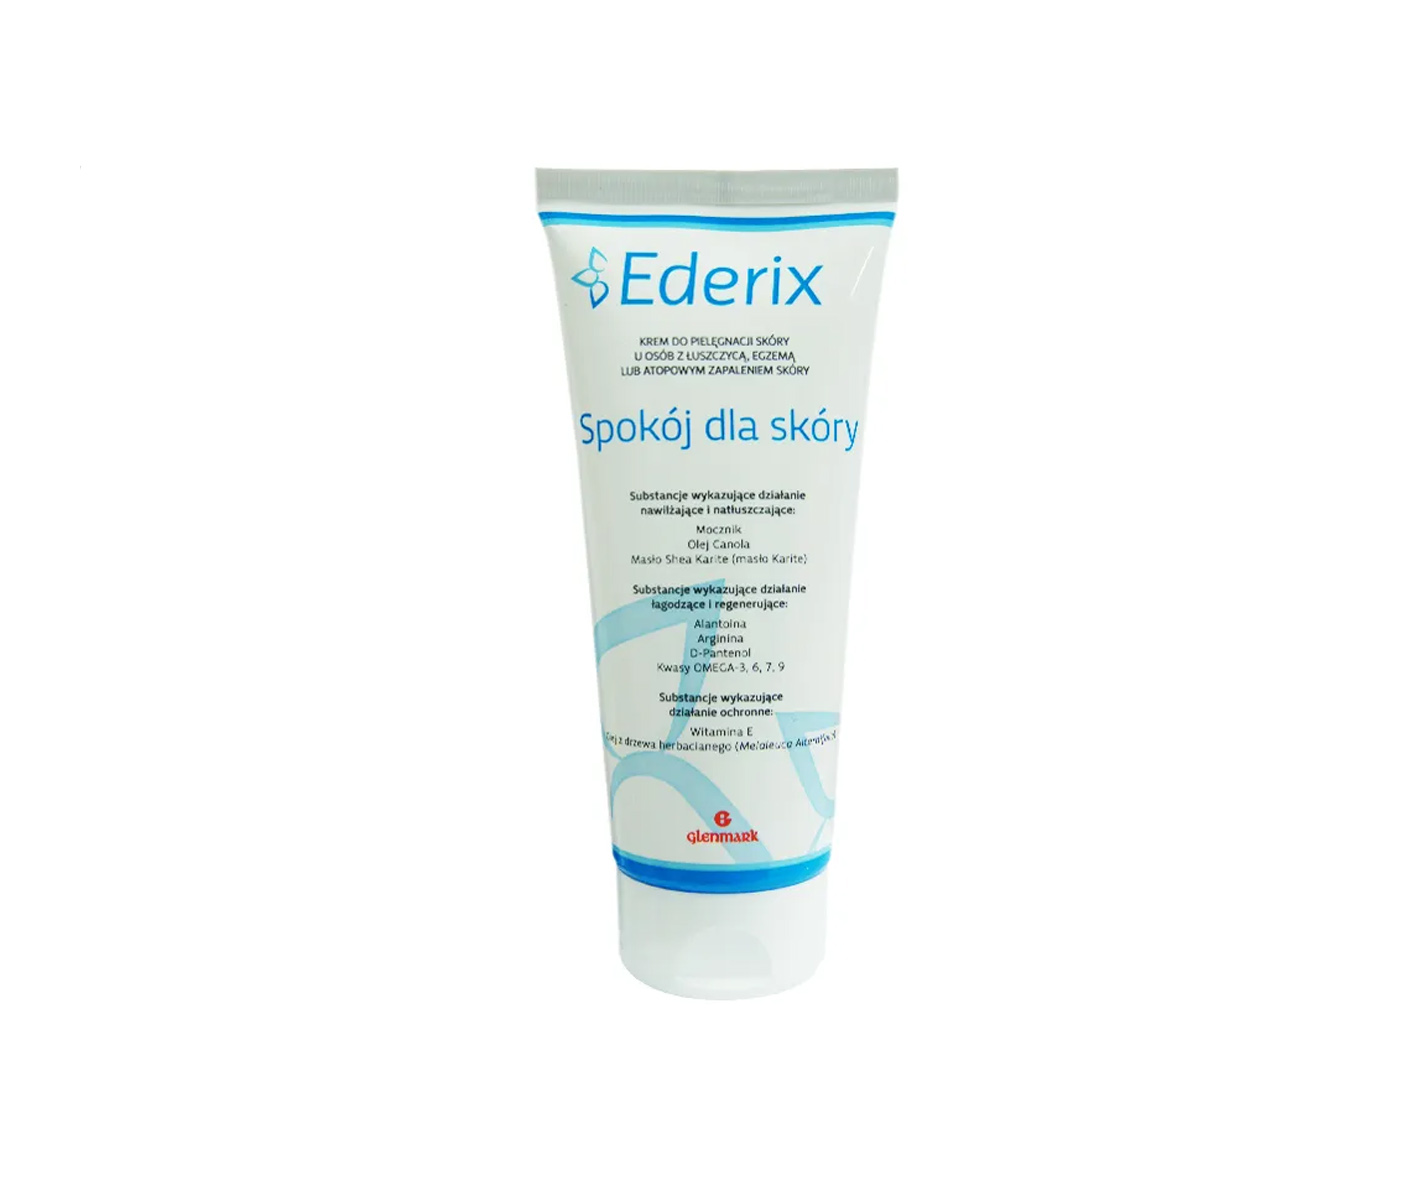 Ederix, Lugn för huden, kräm för vård av problematisk hud